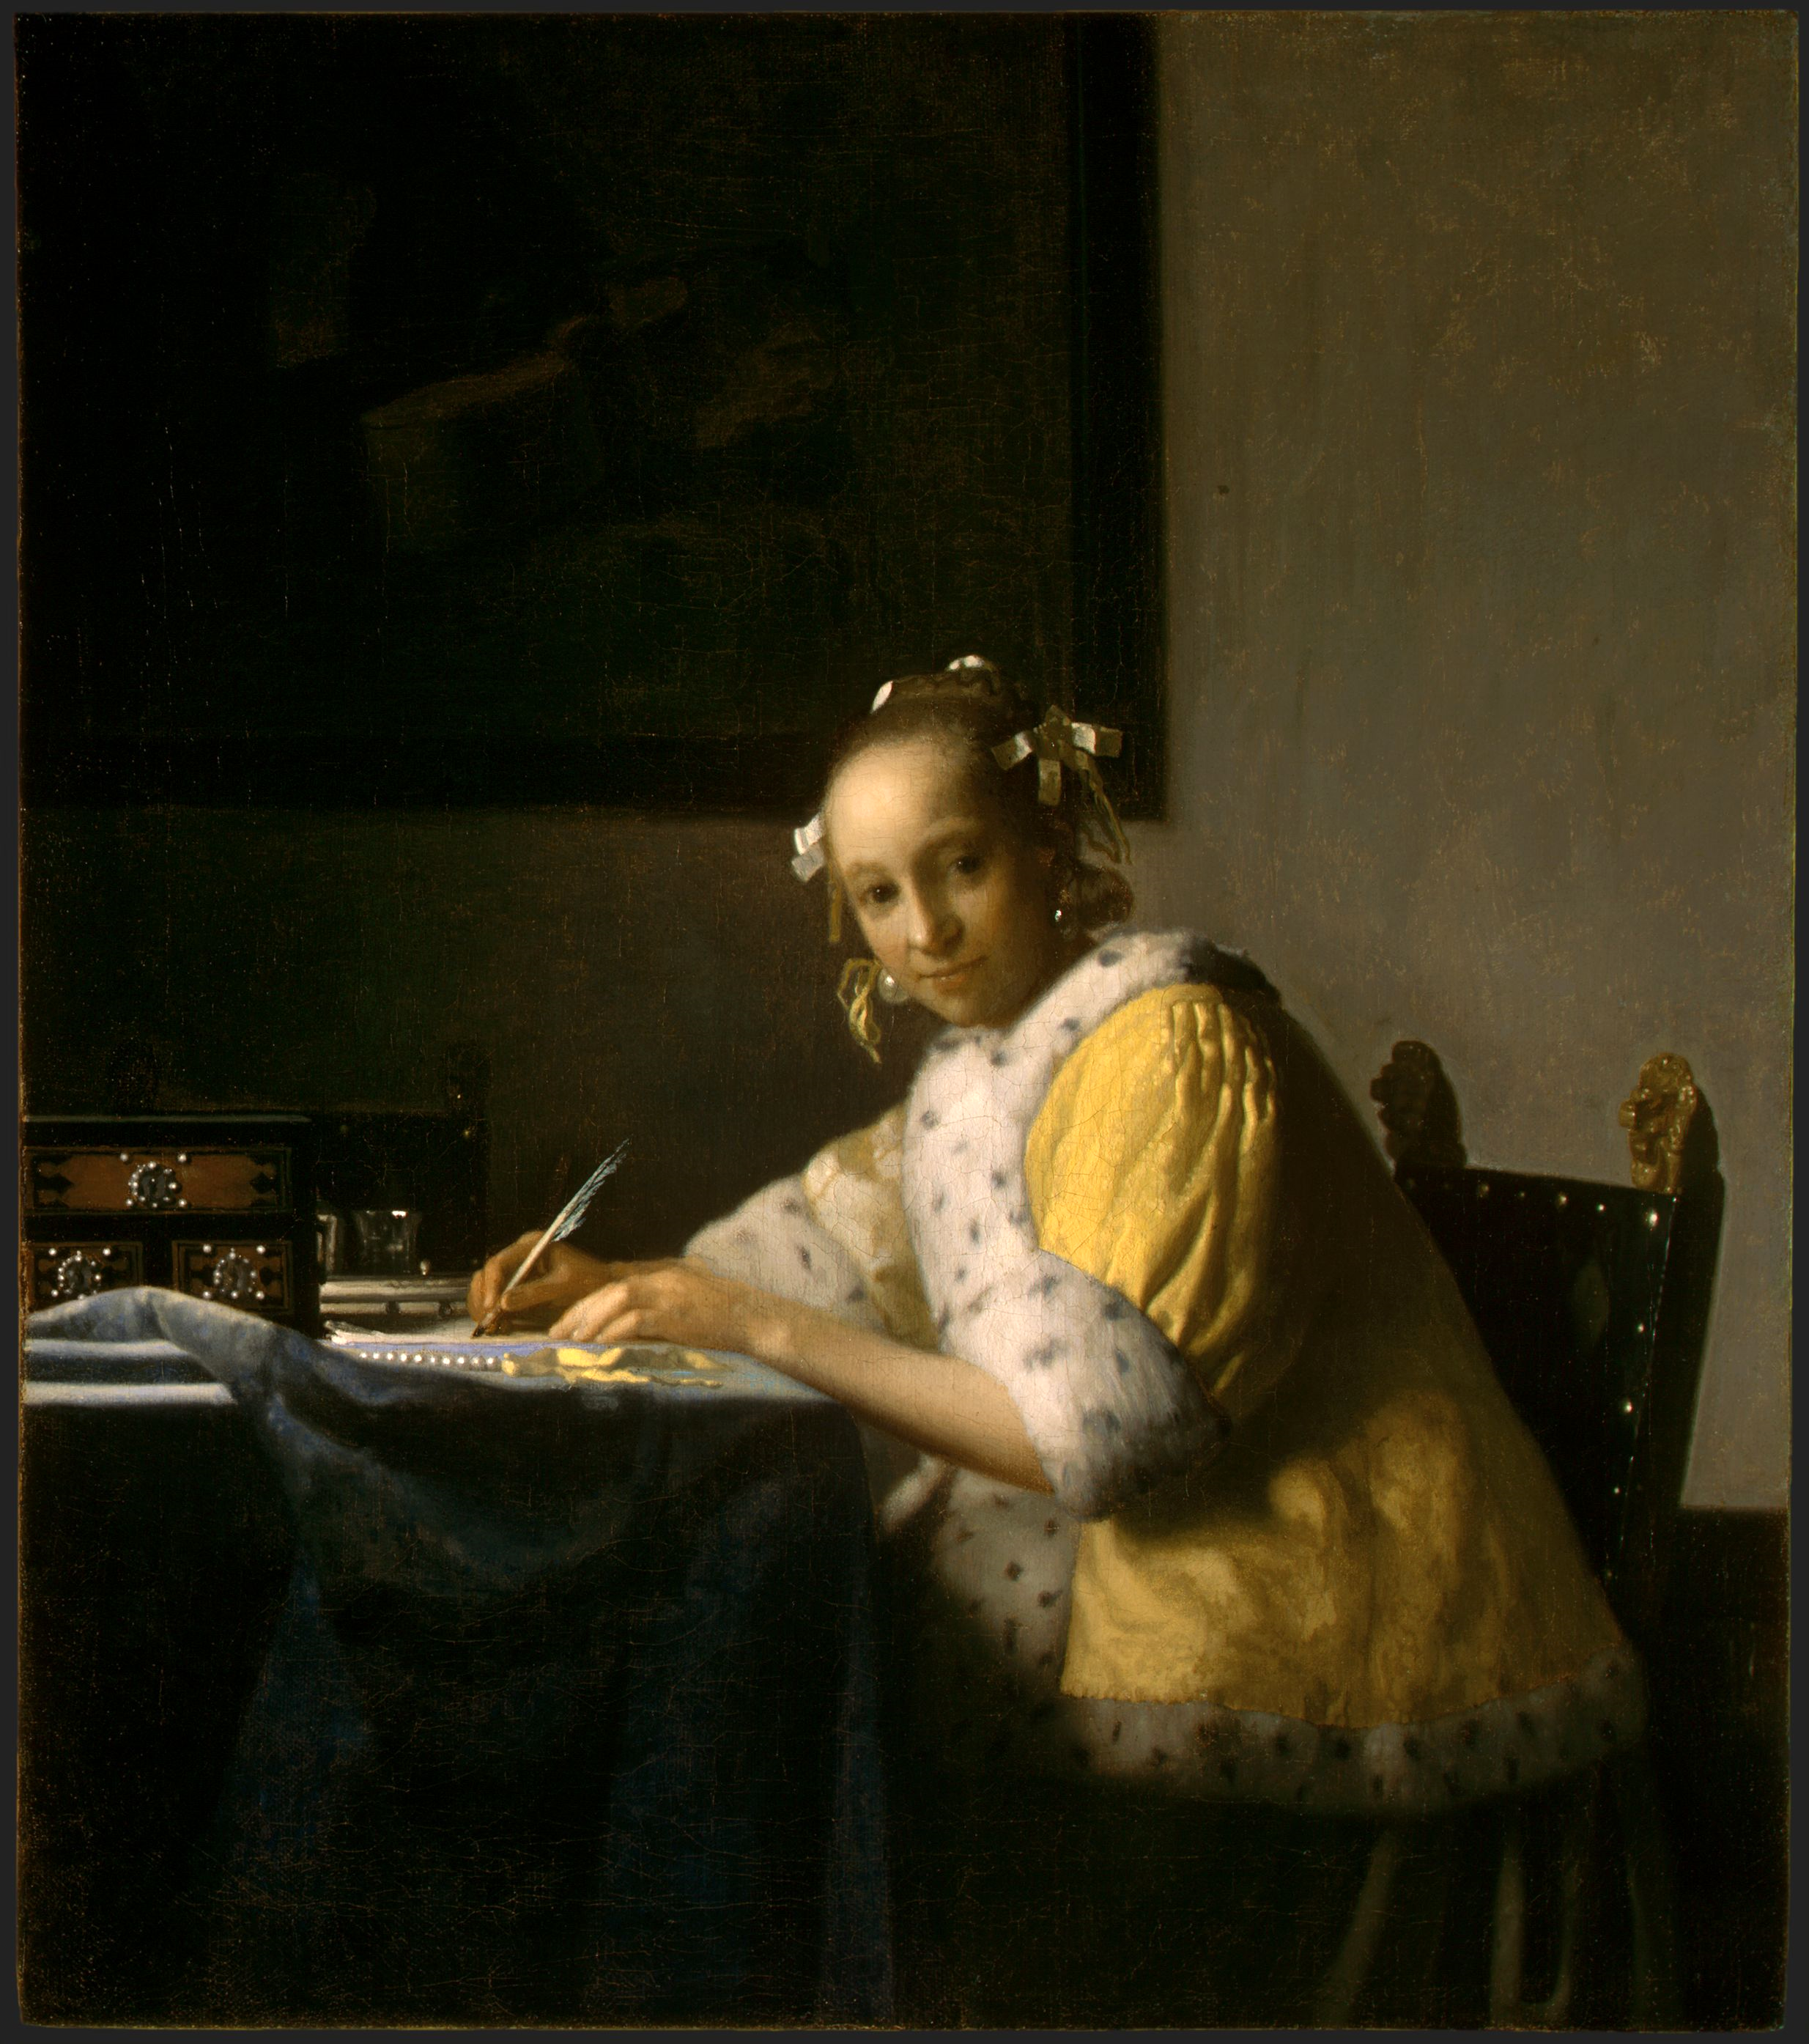 Dama en amarillo escribiendo una carta by Johannes Vermeer - c. 1665 National Gallery of Art